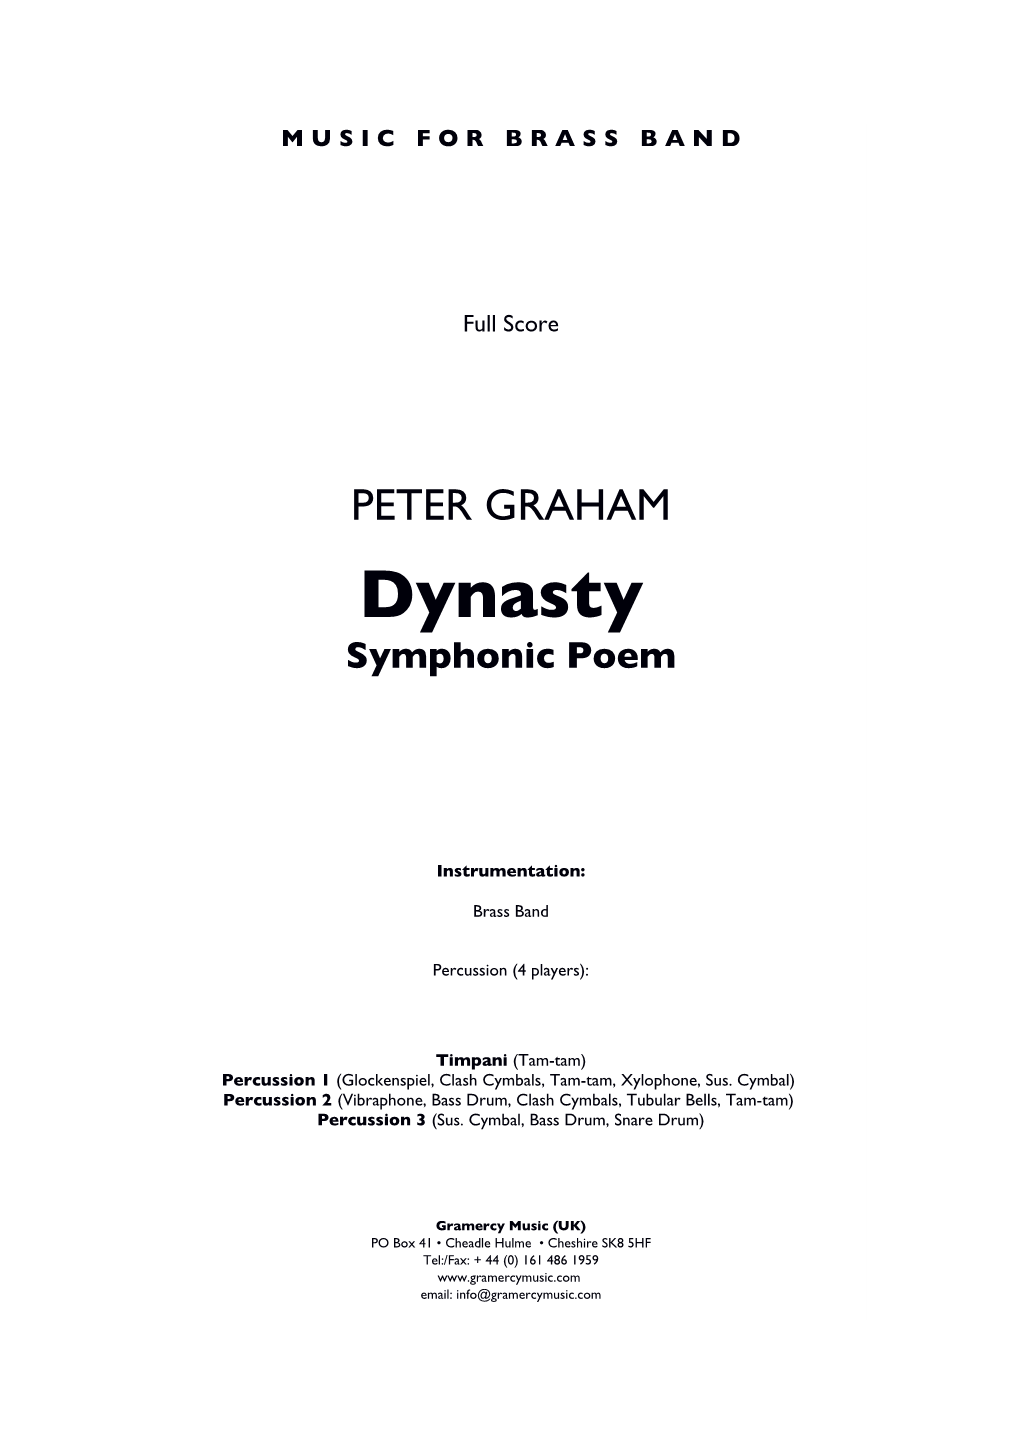 Dynasty Symphonic Poem